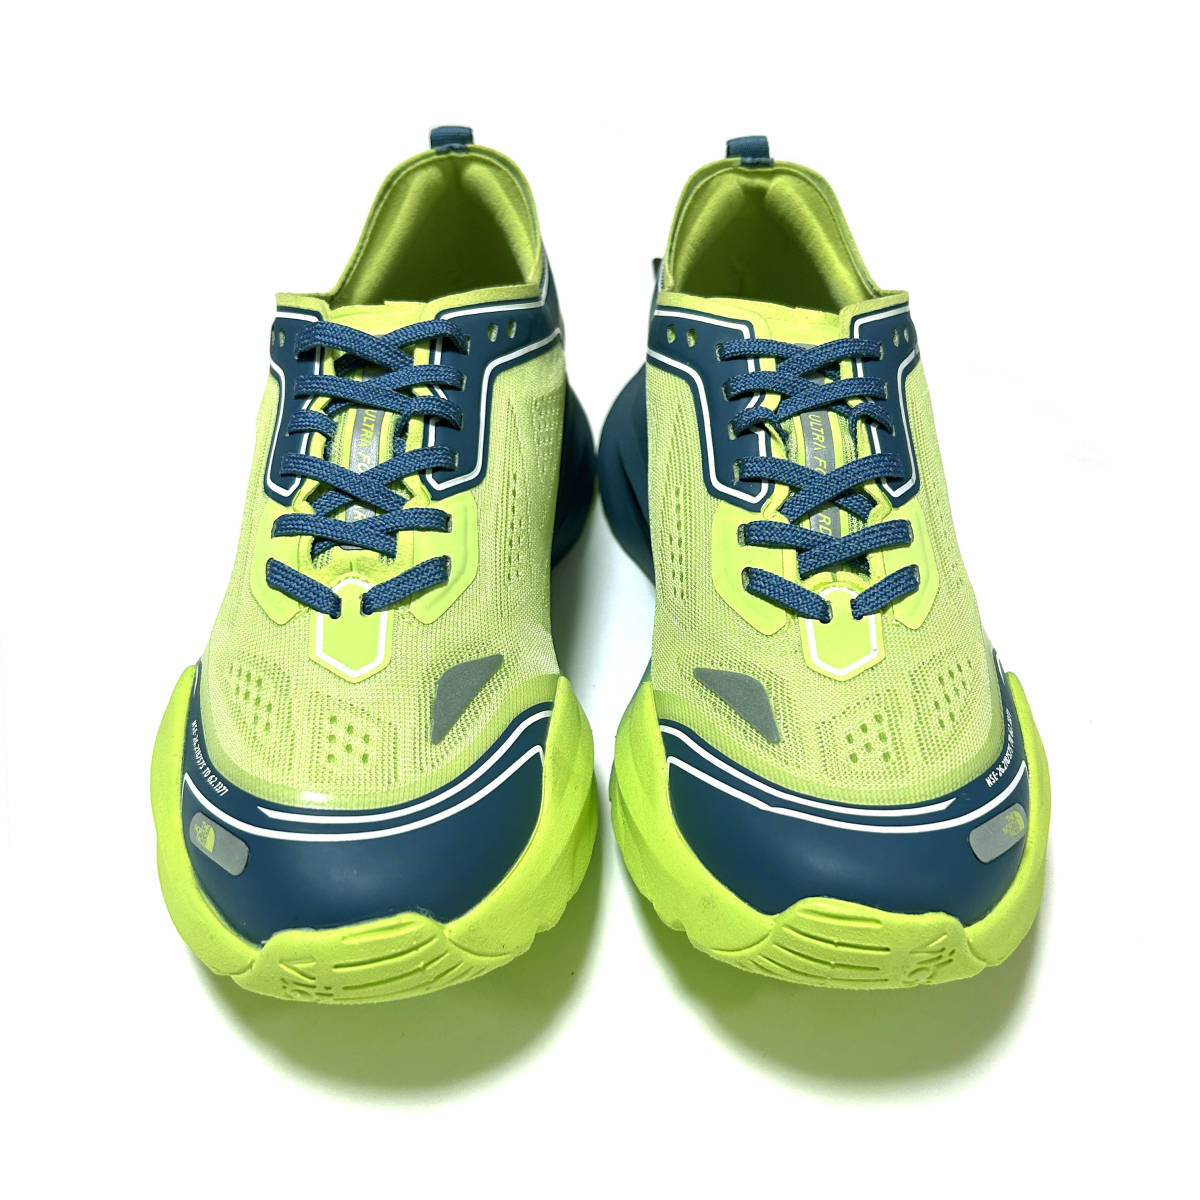  новый товар обычная цена 19800 иен 28cm The * North Face Ultra Forward бег обувь зеленый Trail Ran ULTRA FORWARD NF52200 наземный 